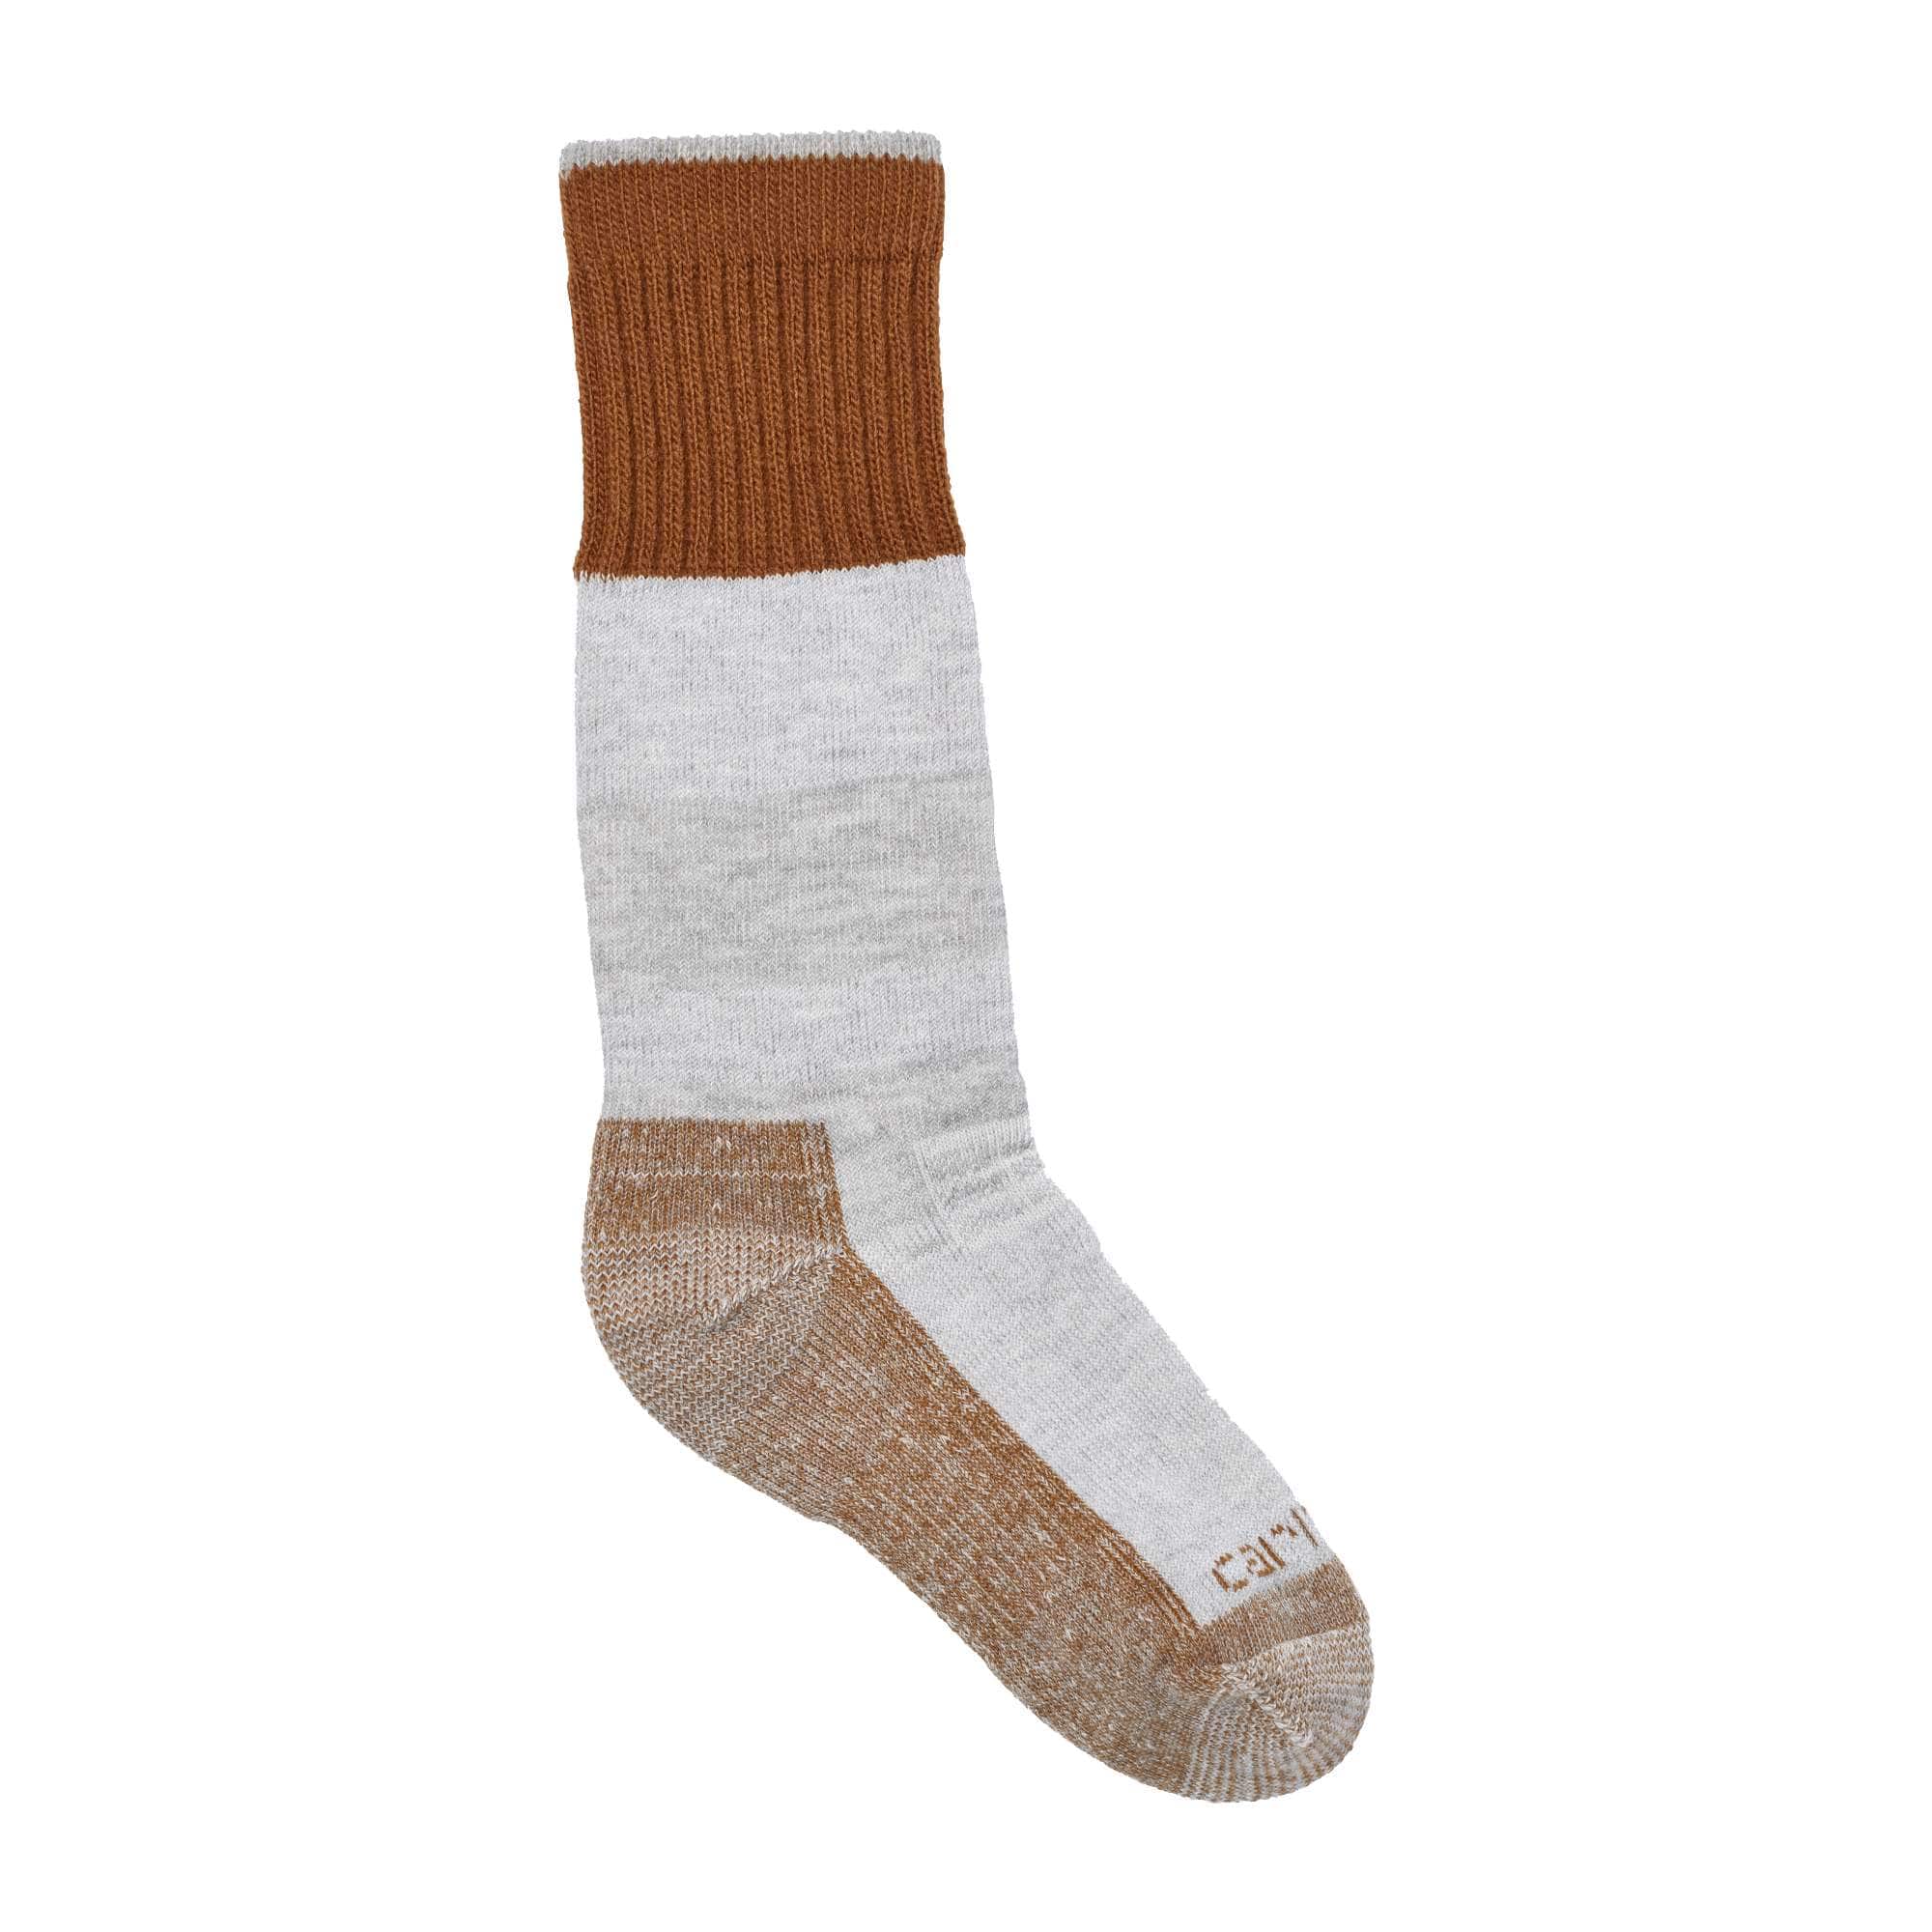 Carhartt SB5780M Men's Merino Wool Comfort-Stretch Steel Toe Socks